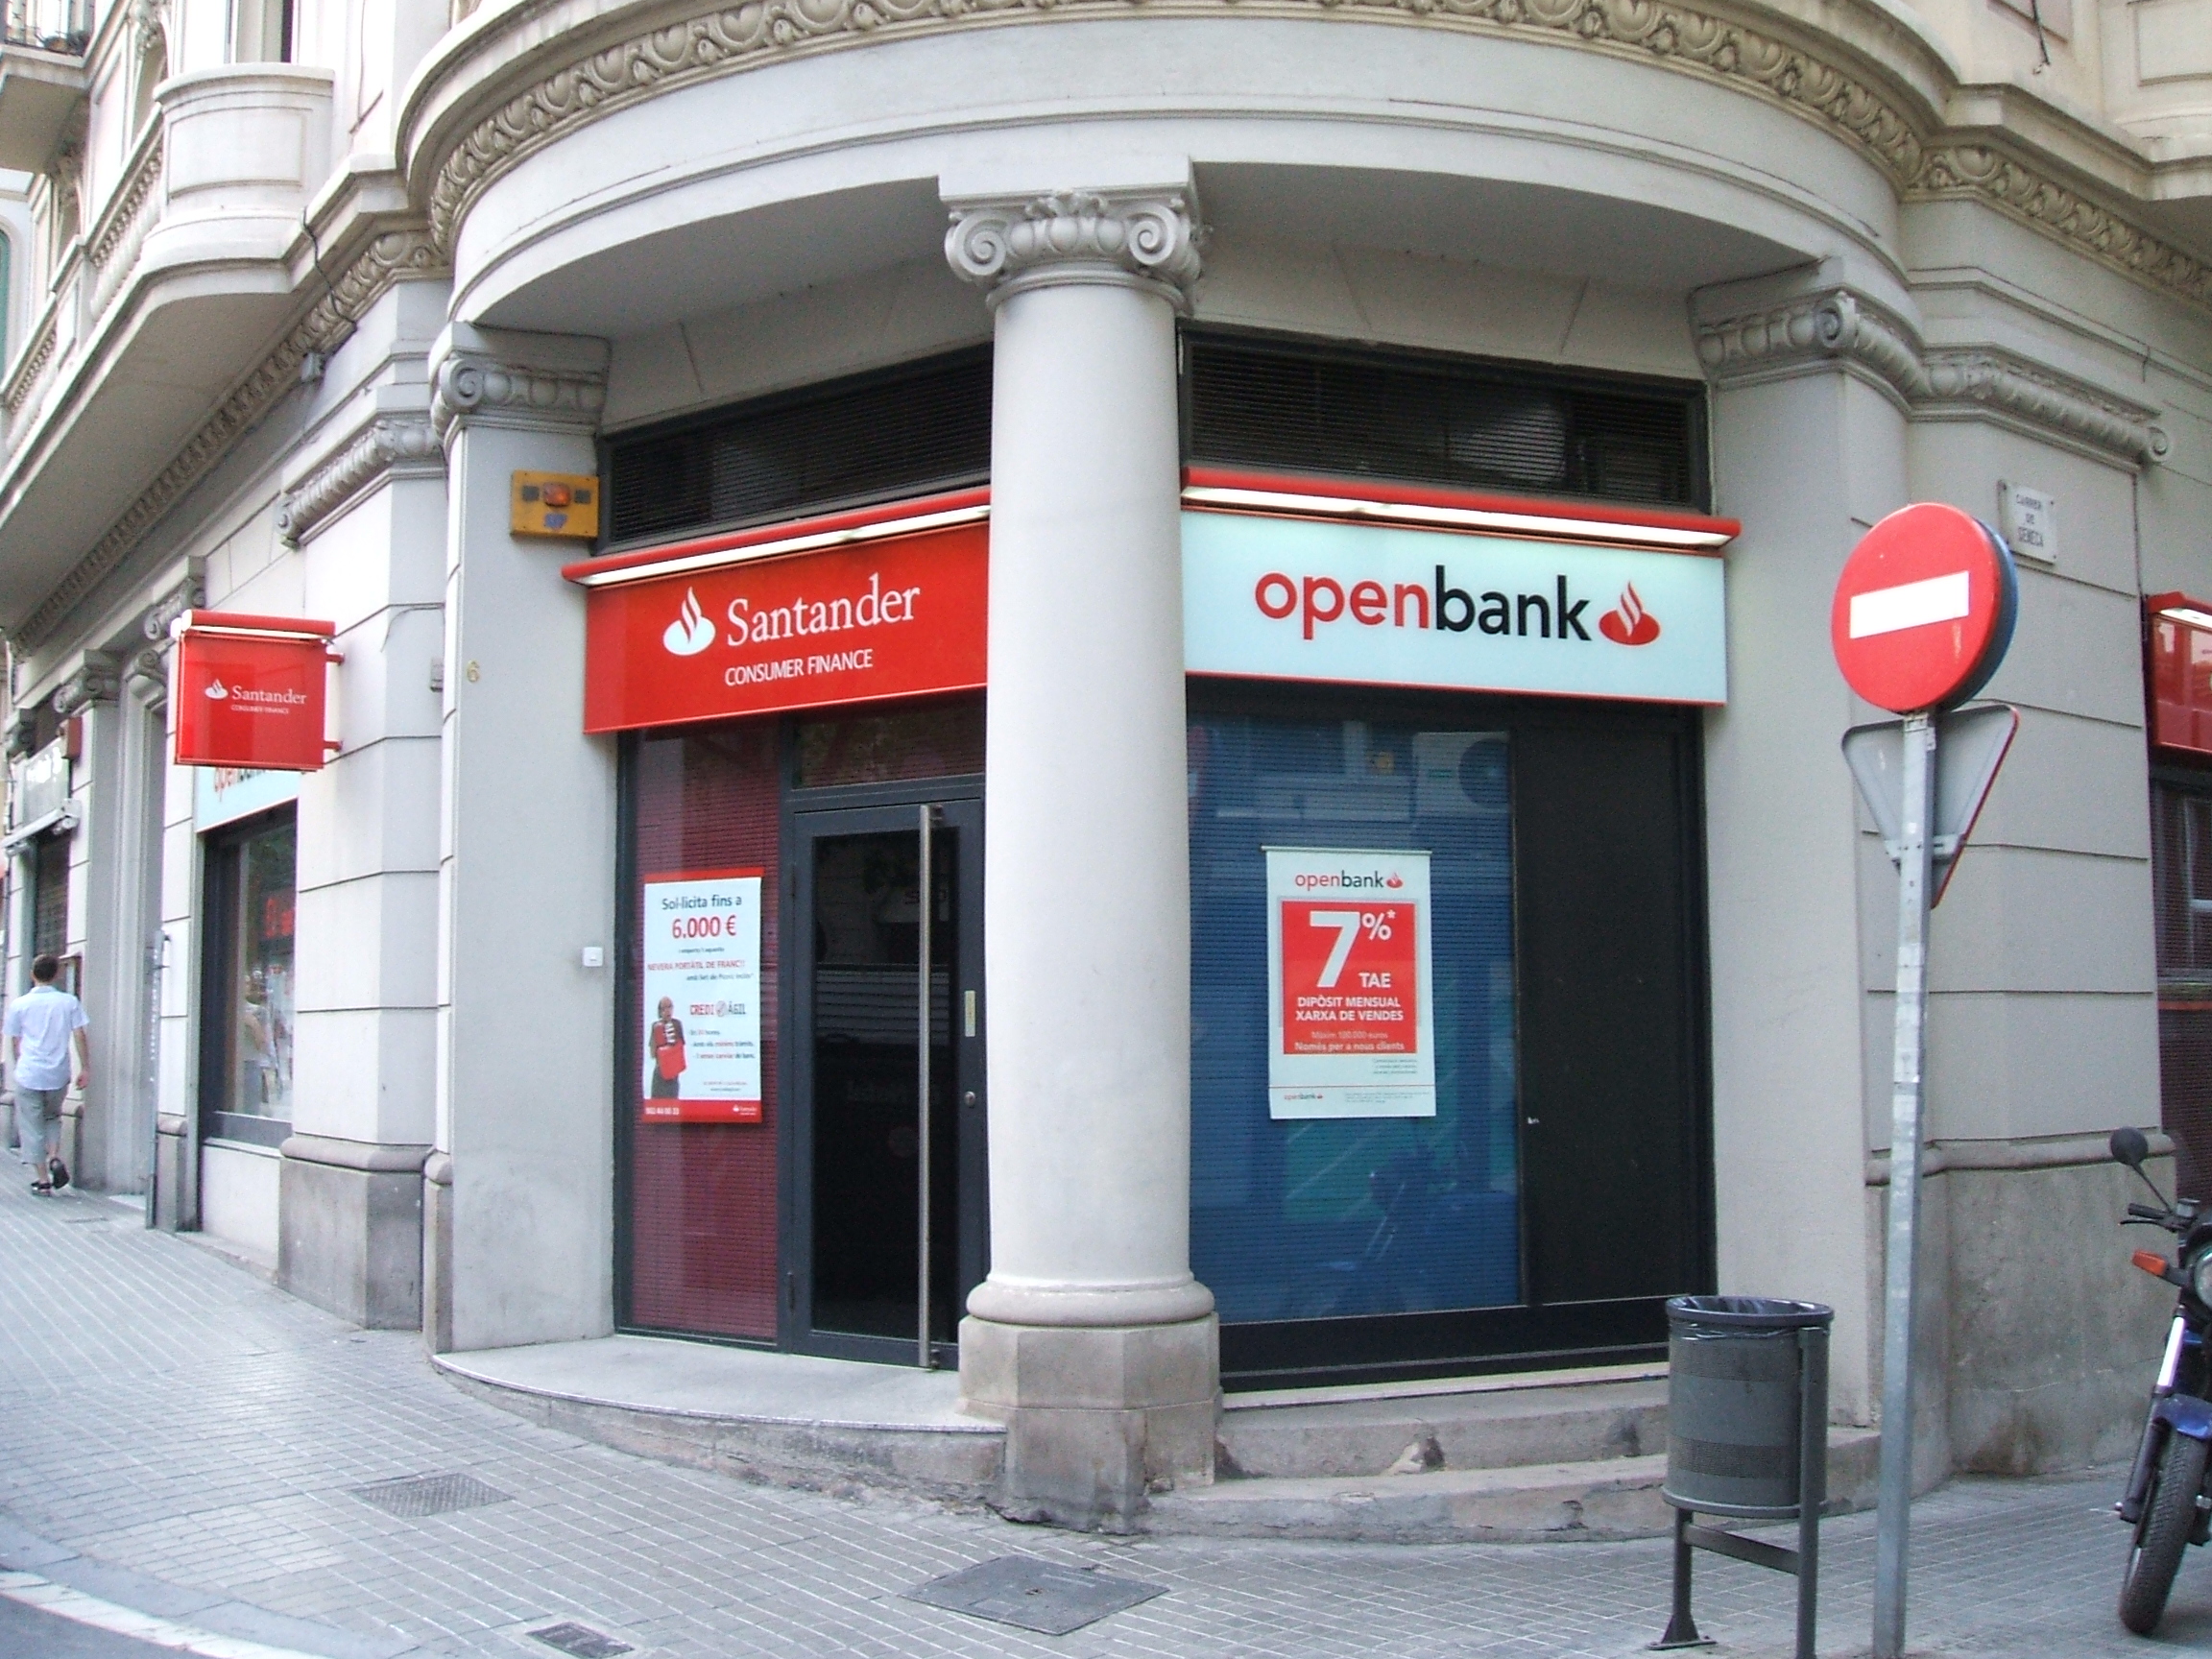 Una sede de Openbank en Barcelona.